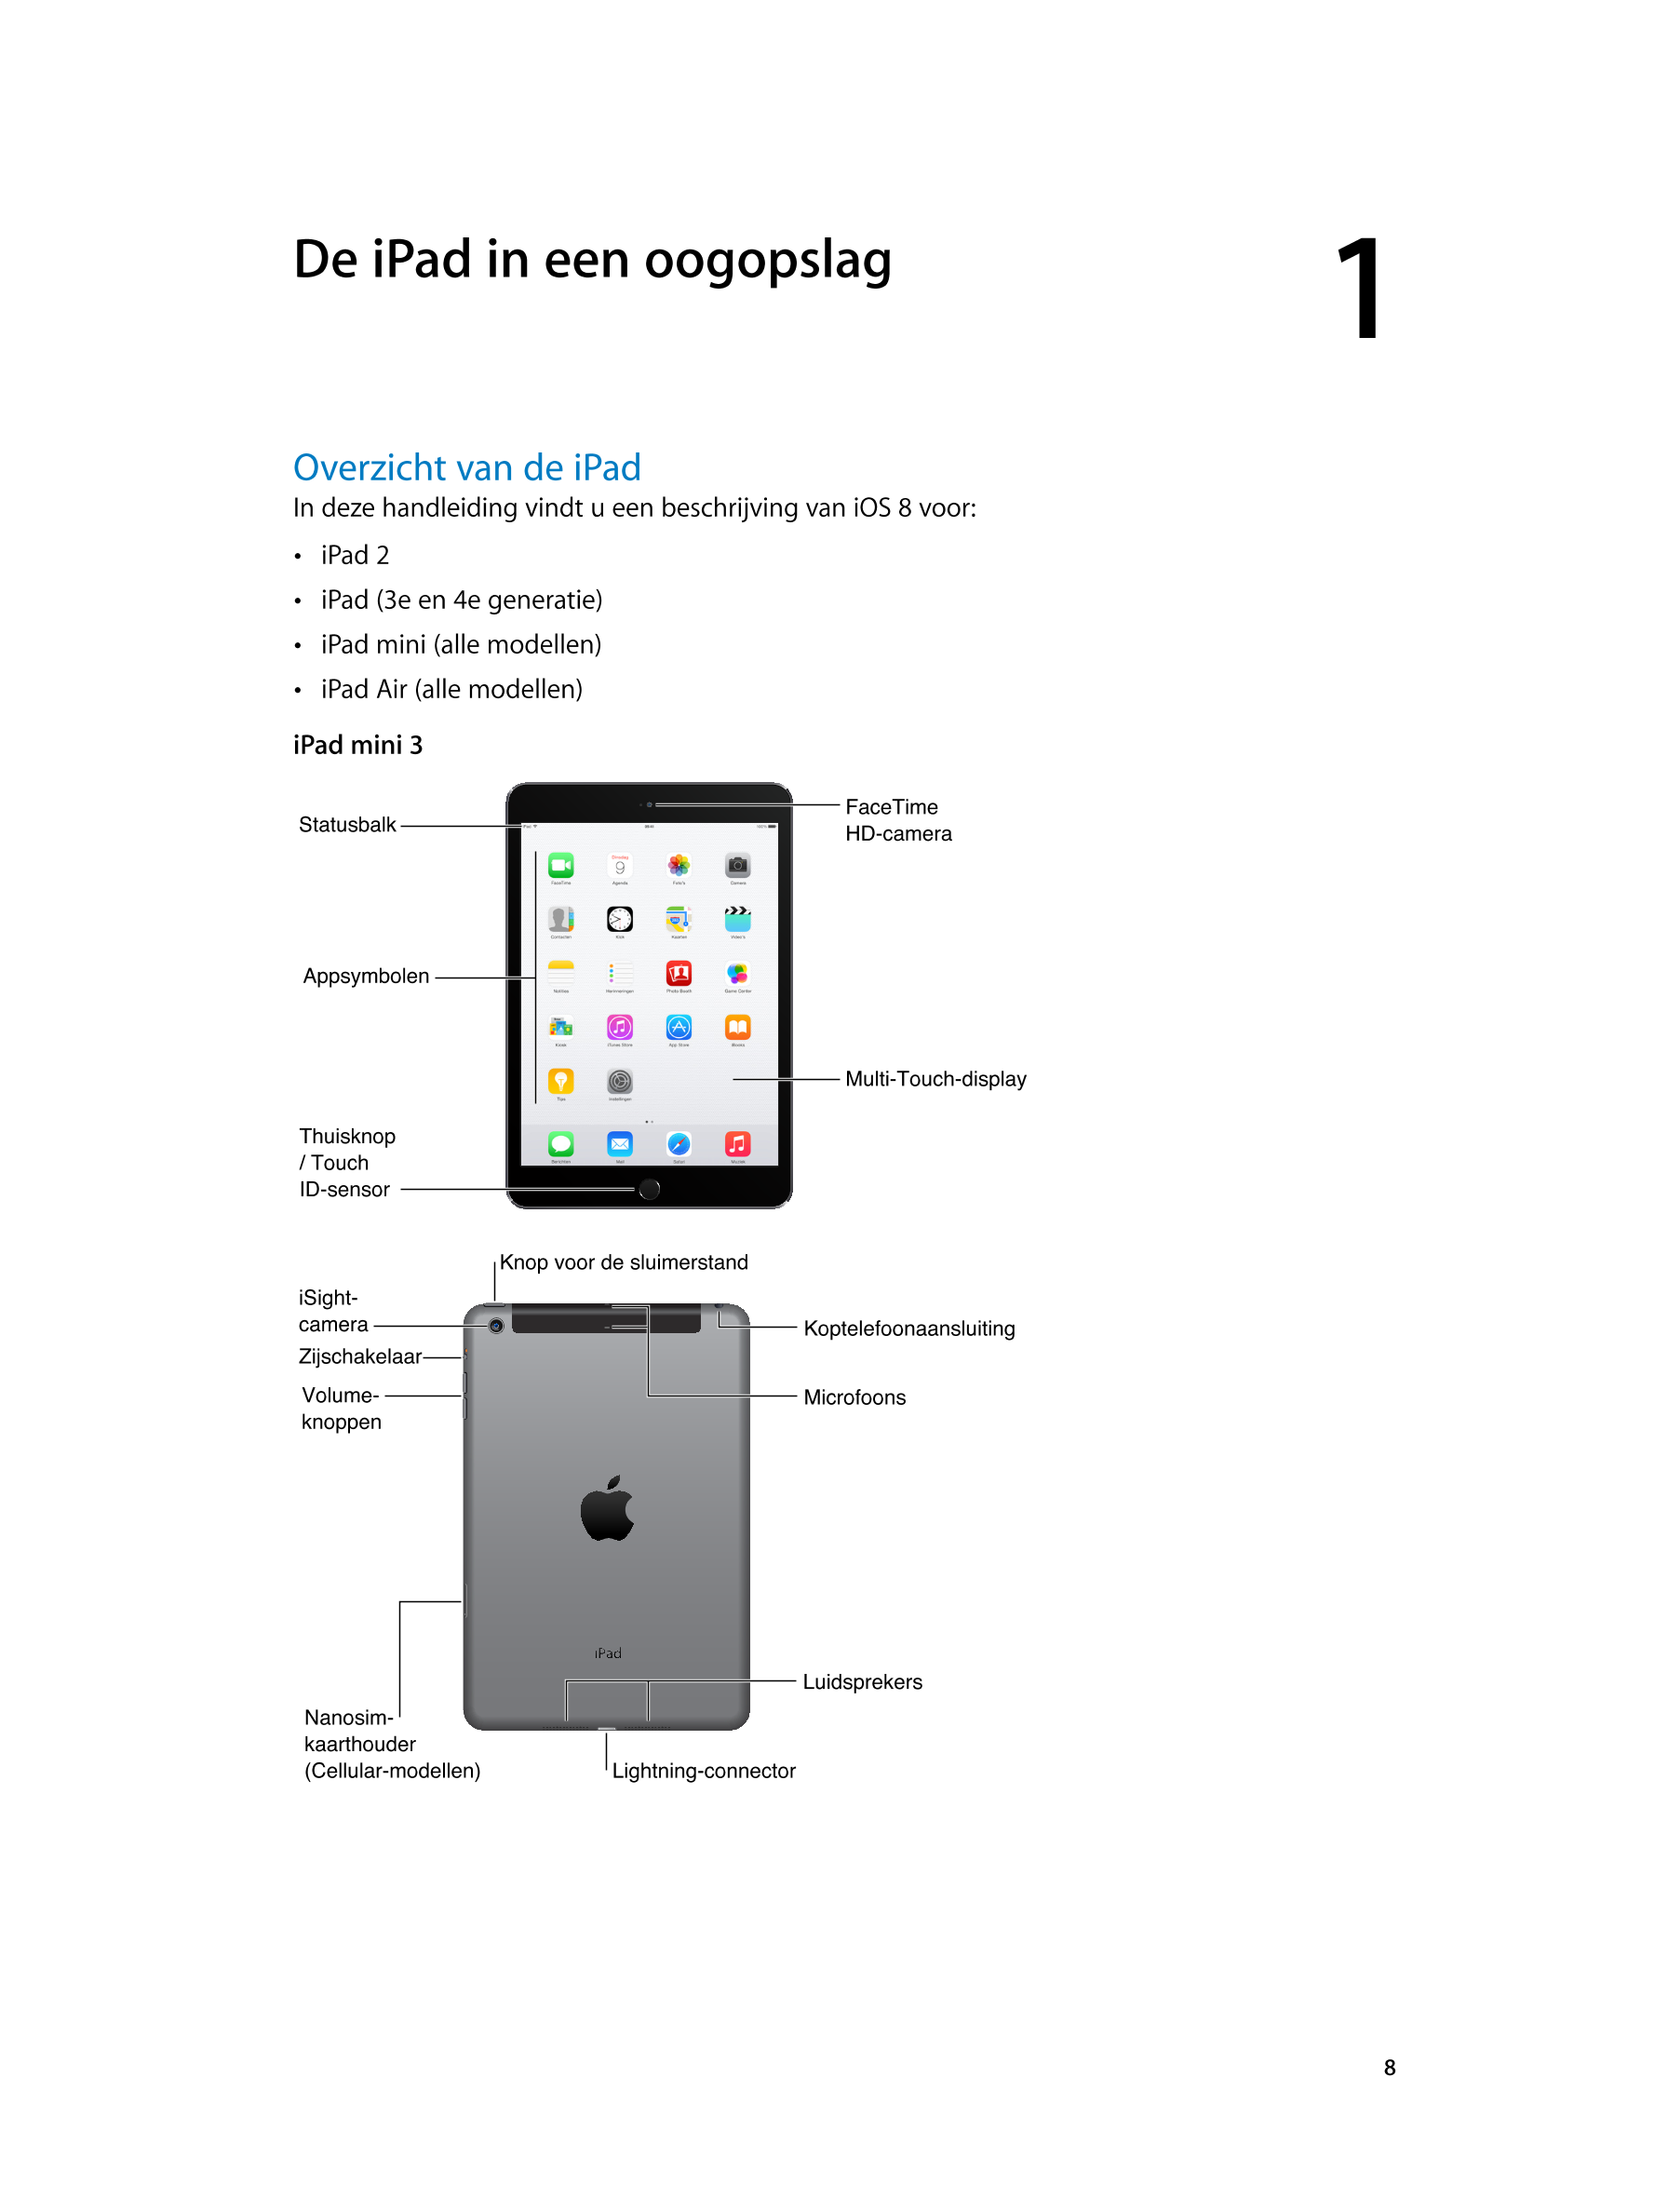   De iPad in een oogopslag 1         
Overzicht van de iPad
In deze handleiding vindt u een beschrijving van iOS 8 voor: 
•  iPa